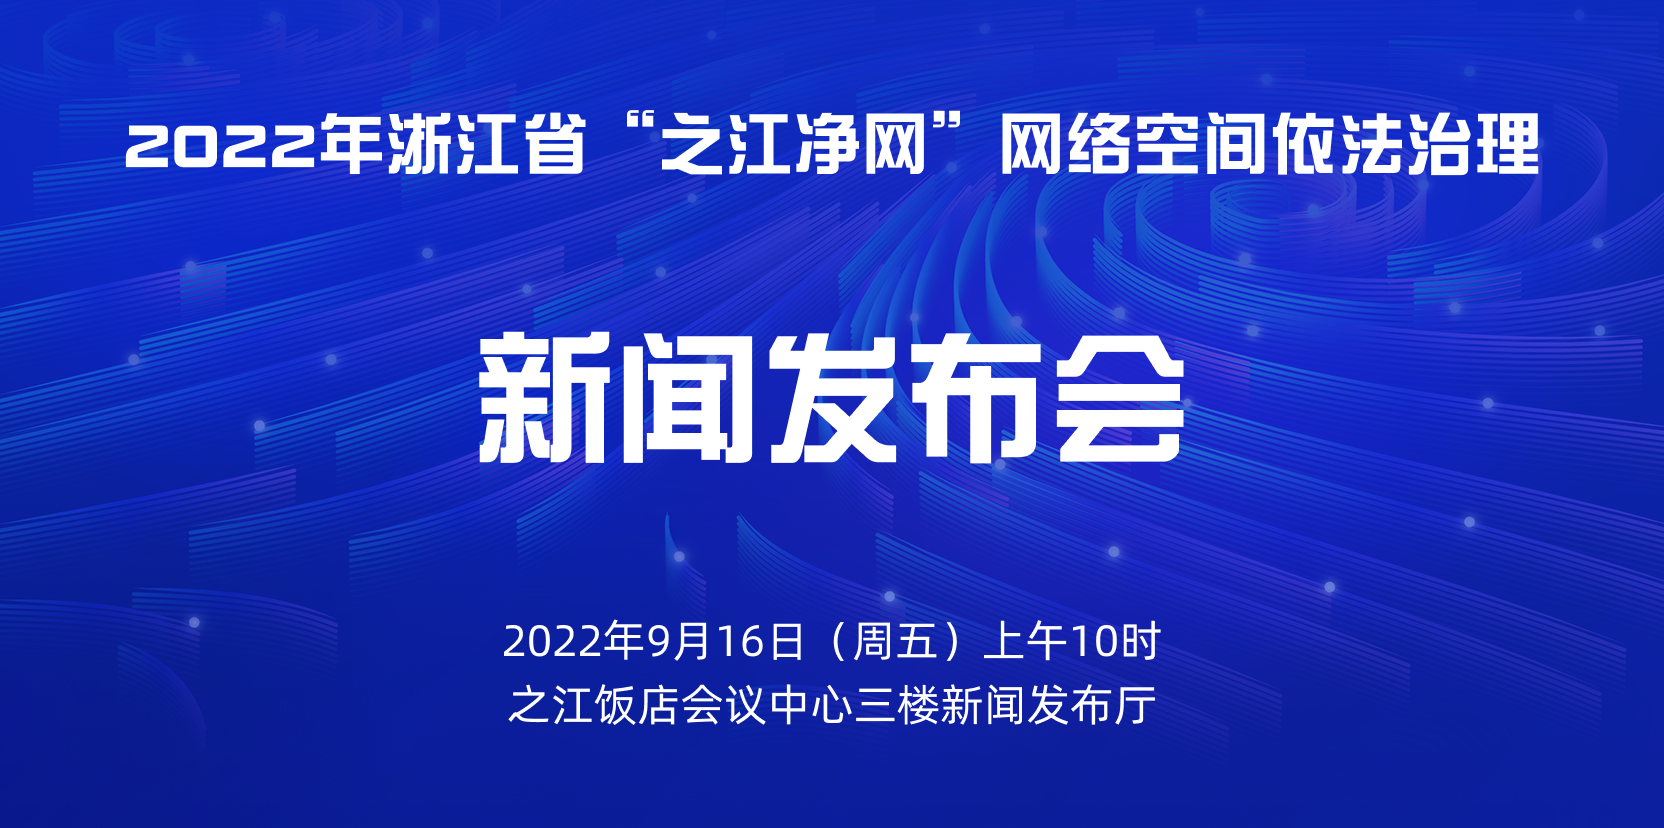 2022年浙江省“之江净网”网络空间依法治理新闻发布会